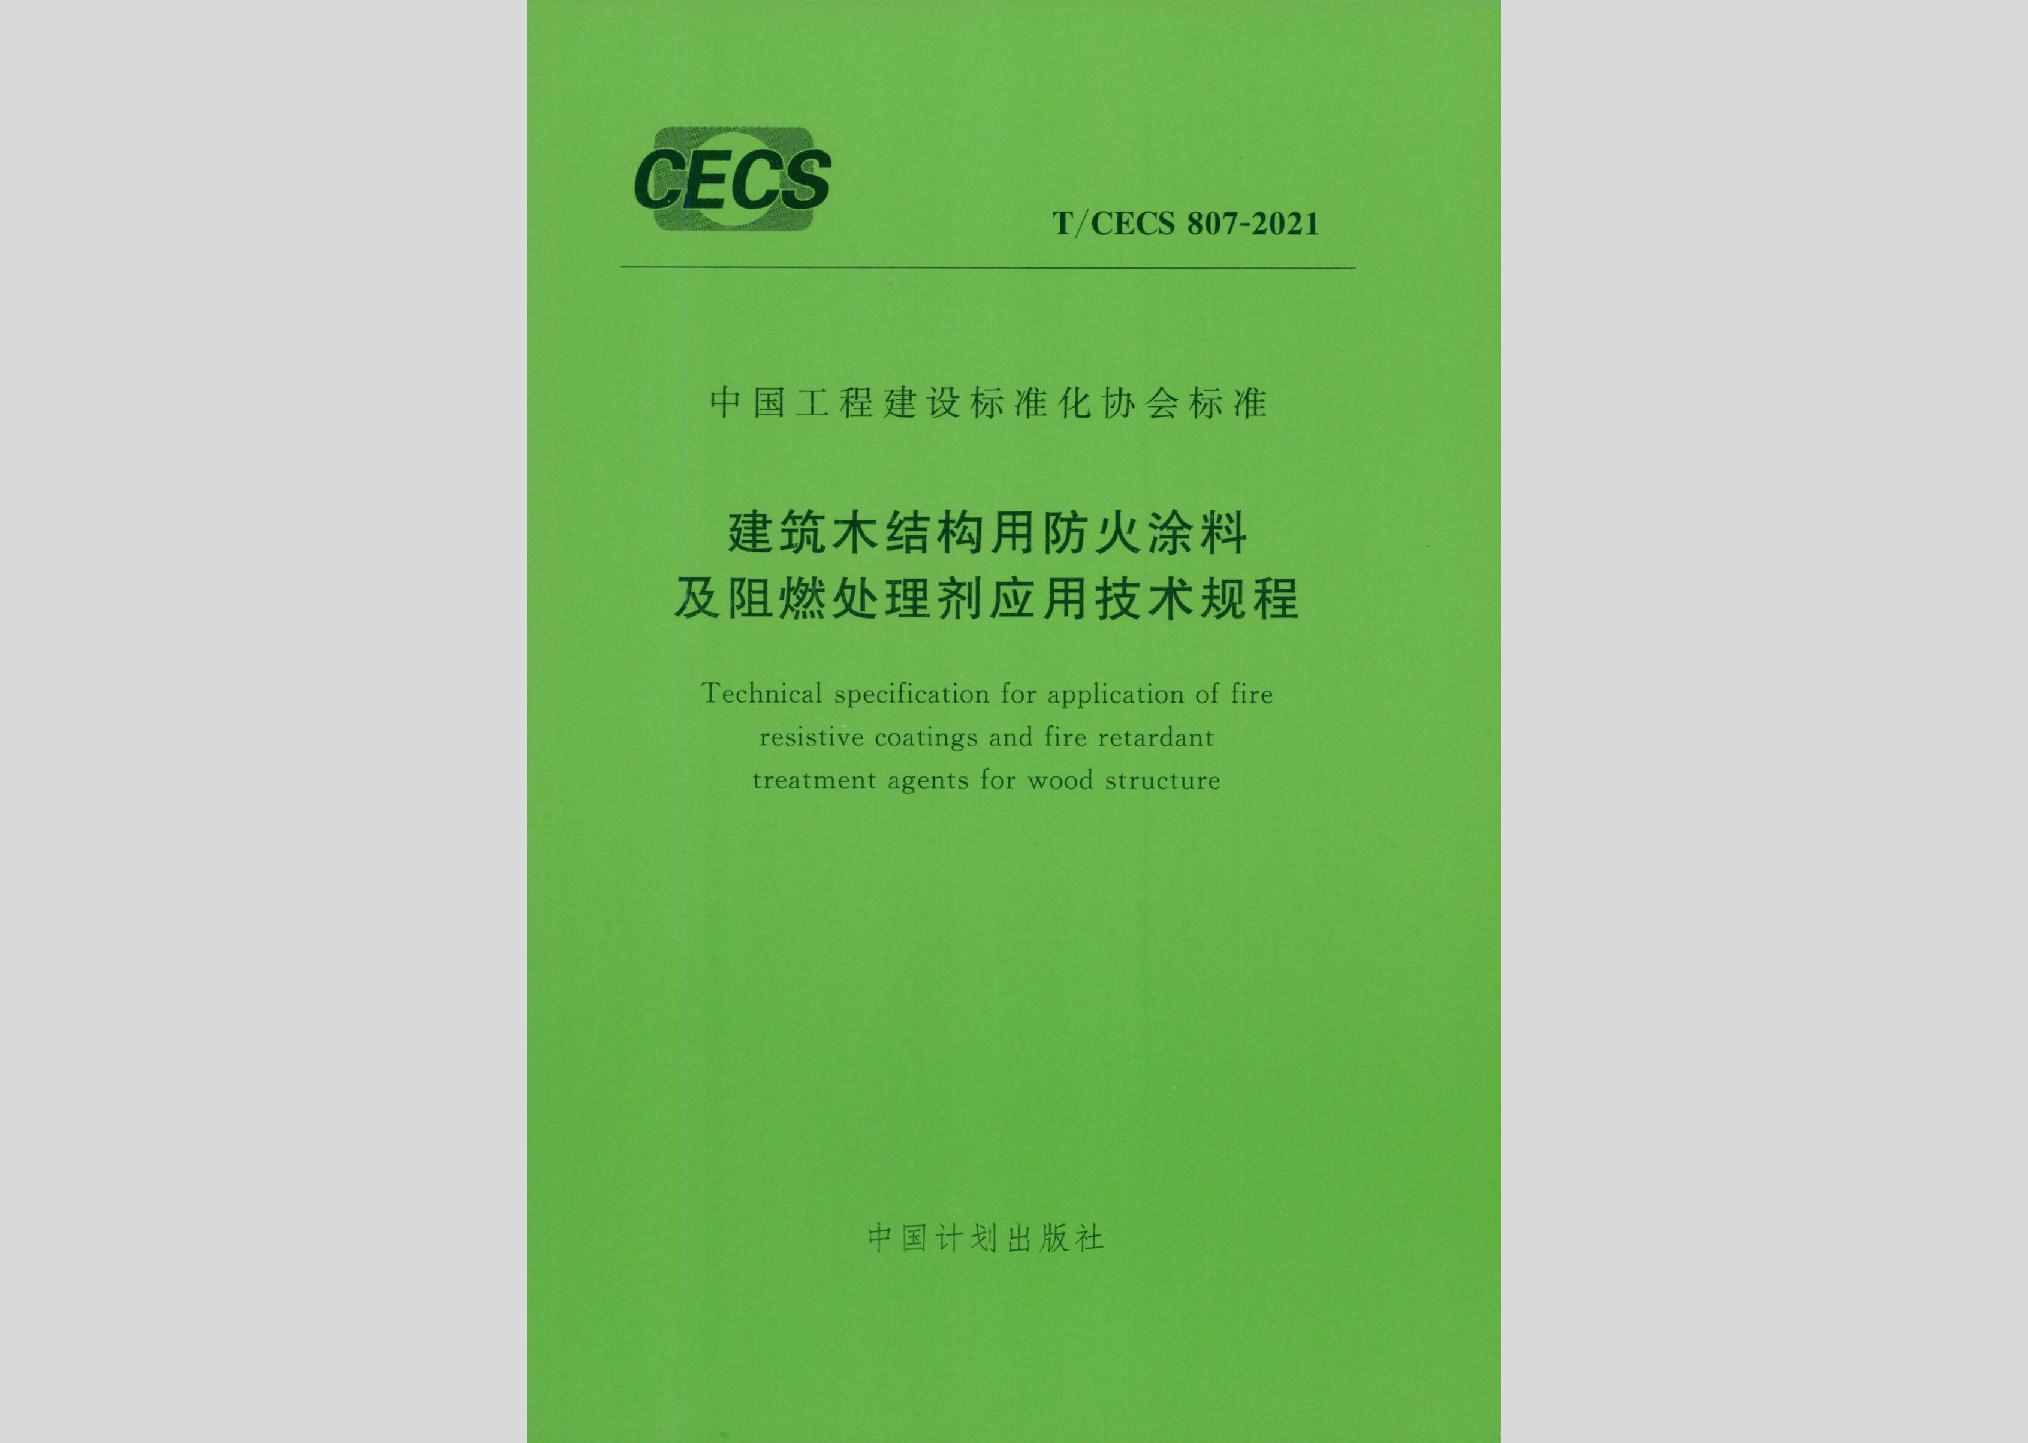 T/CECS807-2021：建筑木结构用防火涂料及阻燃处理剂应用技术规程